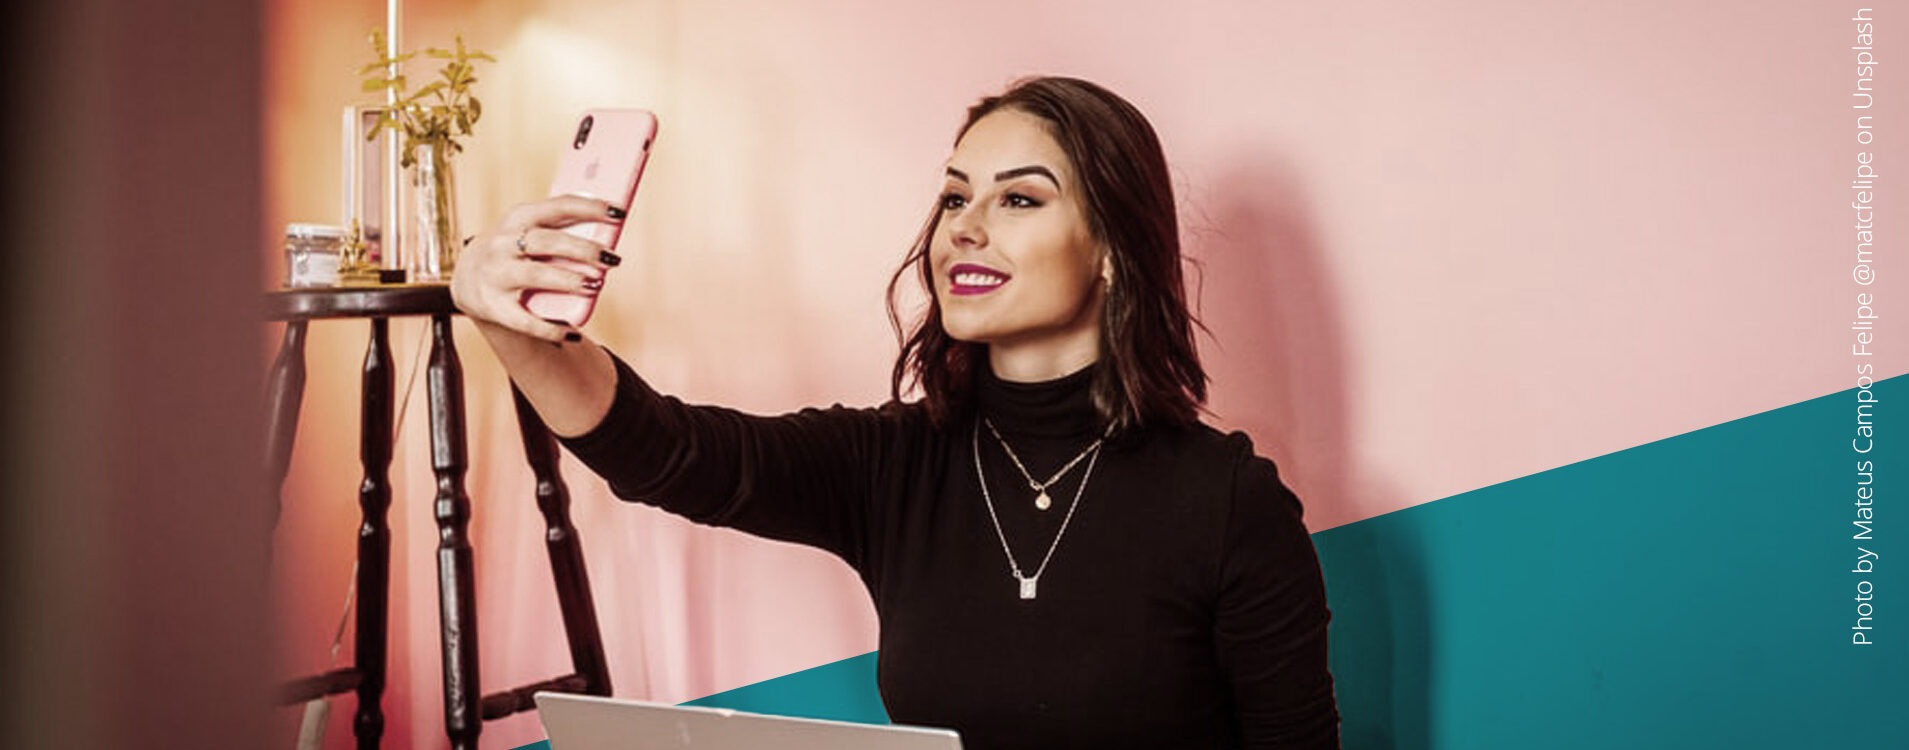 Junge Frau mit dunklen Haaren und Laptop auf dem Schoß macht ein Selfie vor einer pinken Wand